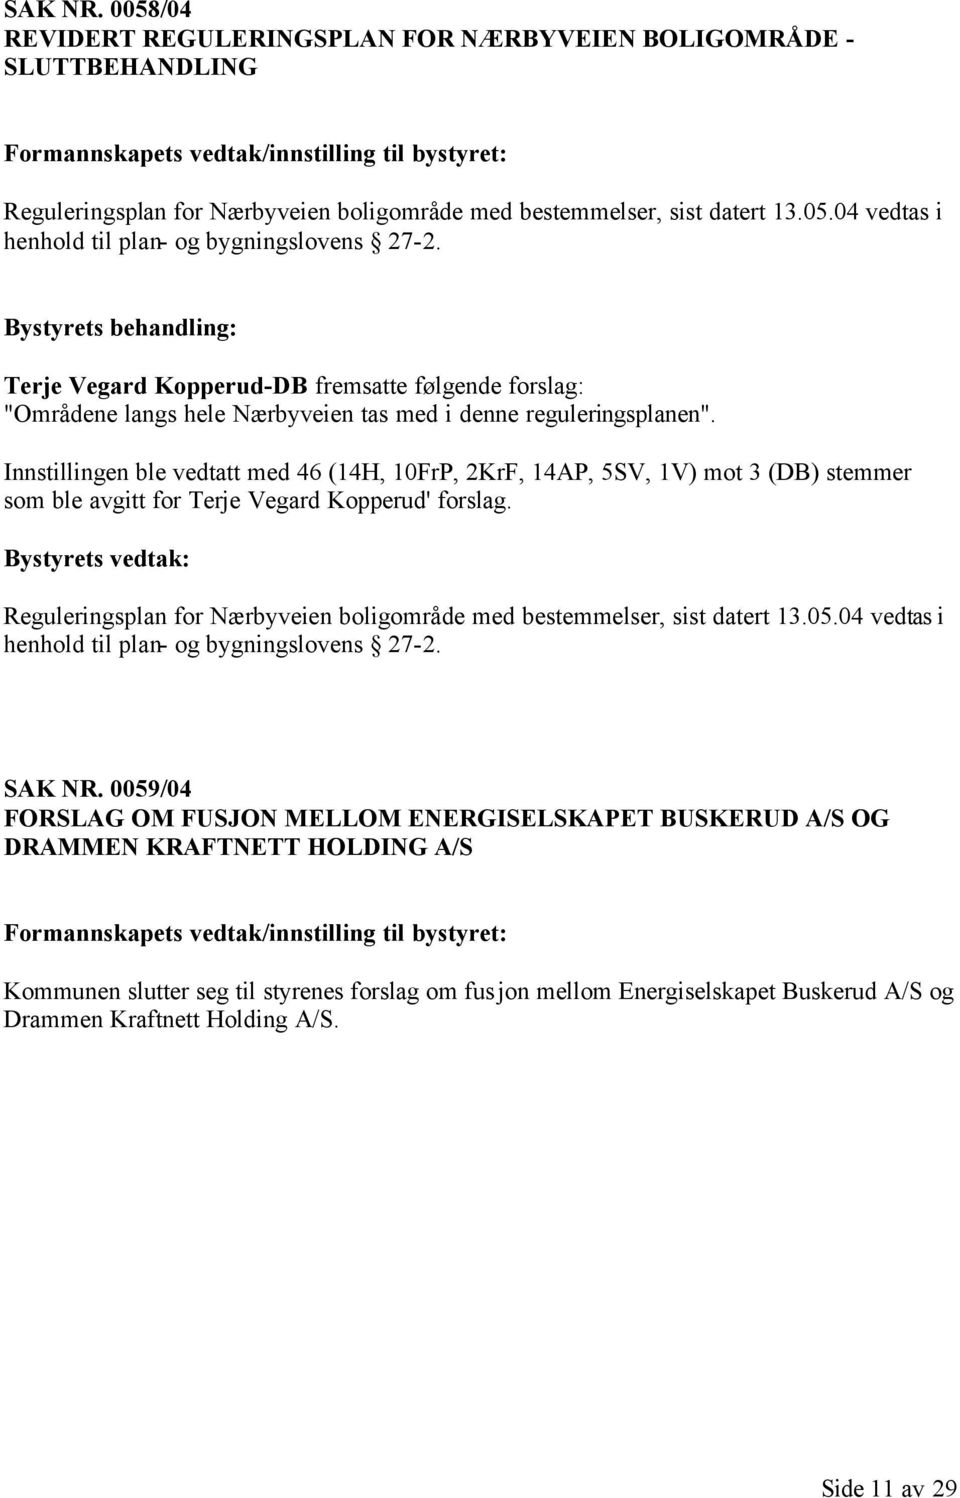 13.05.04 vedtas i henhold til plan- og bygningslovens 27-2. Terje Vegard Kopperud-DB fremsatte følgende forslag: "Områdene langs hele Nærbyveien tas med i denne reguleringsplanen".